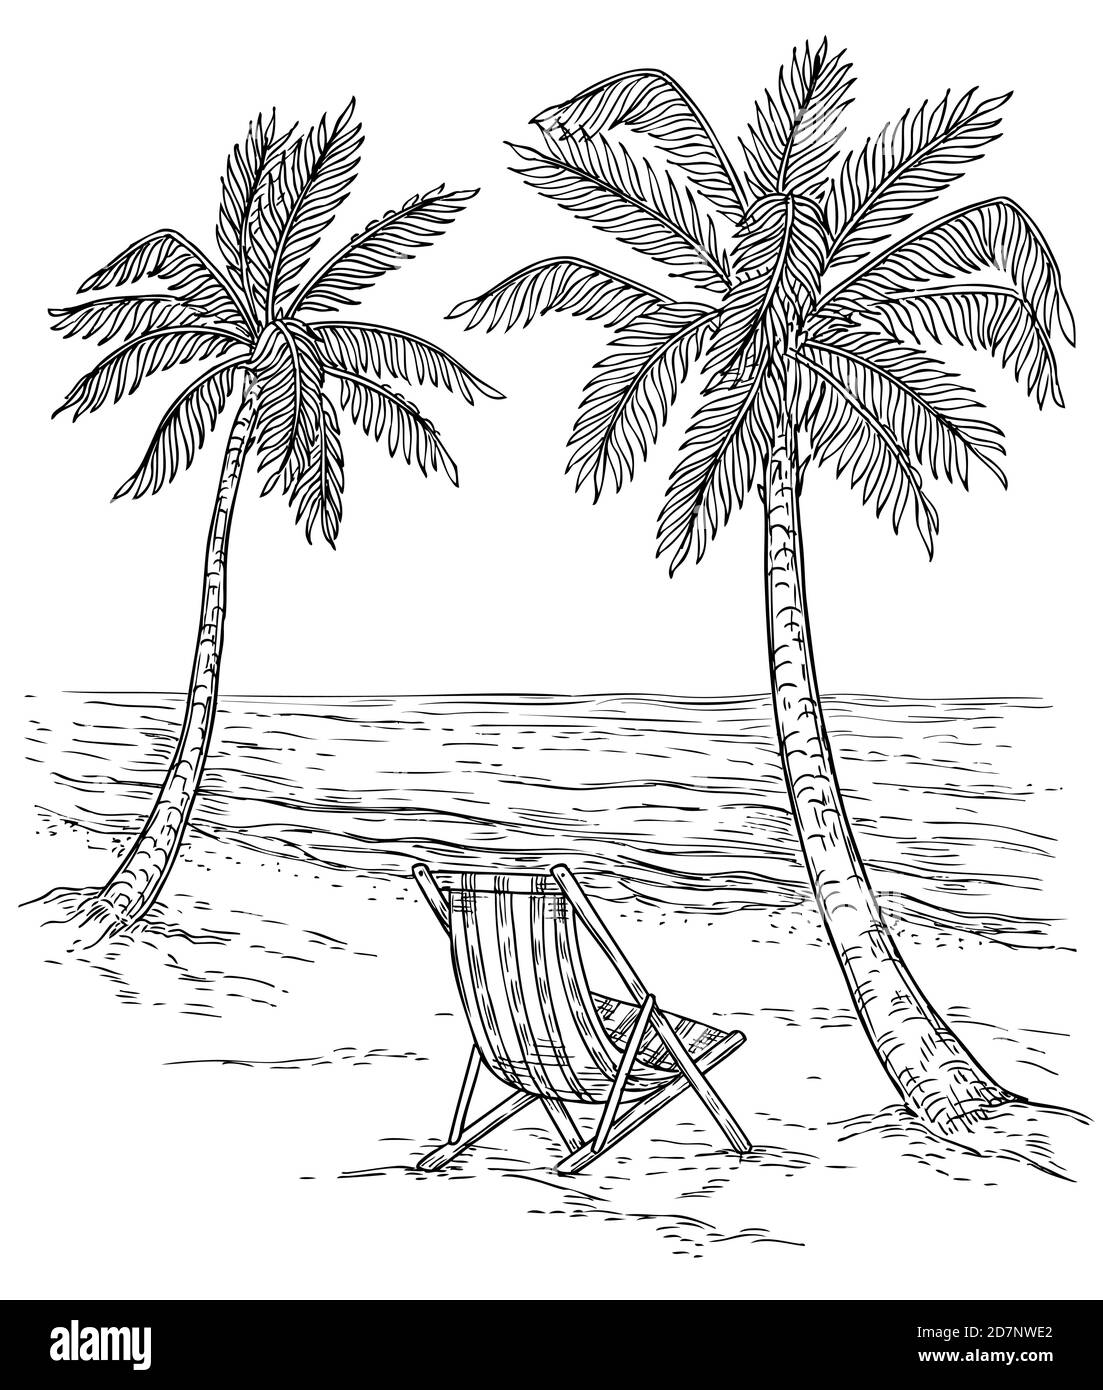 Skizzieren Sie die Palmenlandschaft. Tropischer Palmenstrand, exotische Bäume und Meereswellen. Vintage Hand Zeichnung Vektor entspannend Sommer Hintergrund. Sommer exotische tropischen Strand, Landschaft Meer und Palmen Illustration Stock Vektor